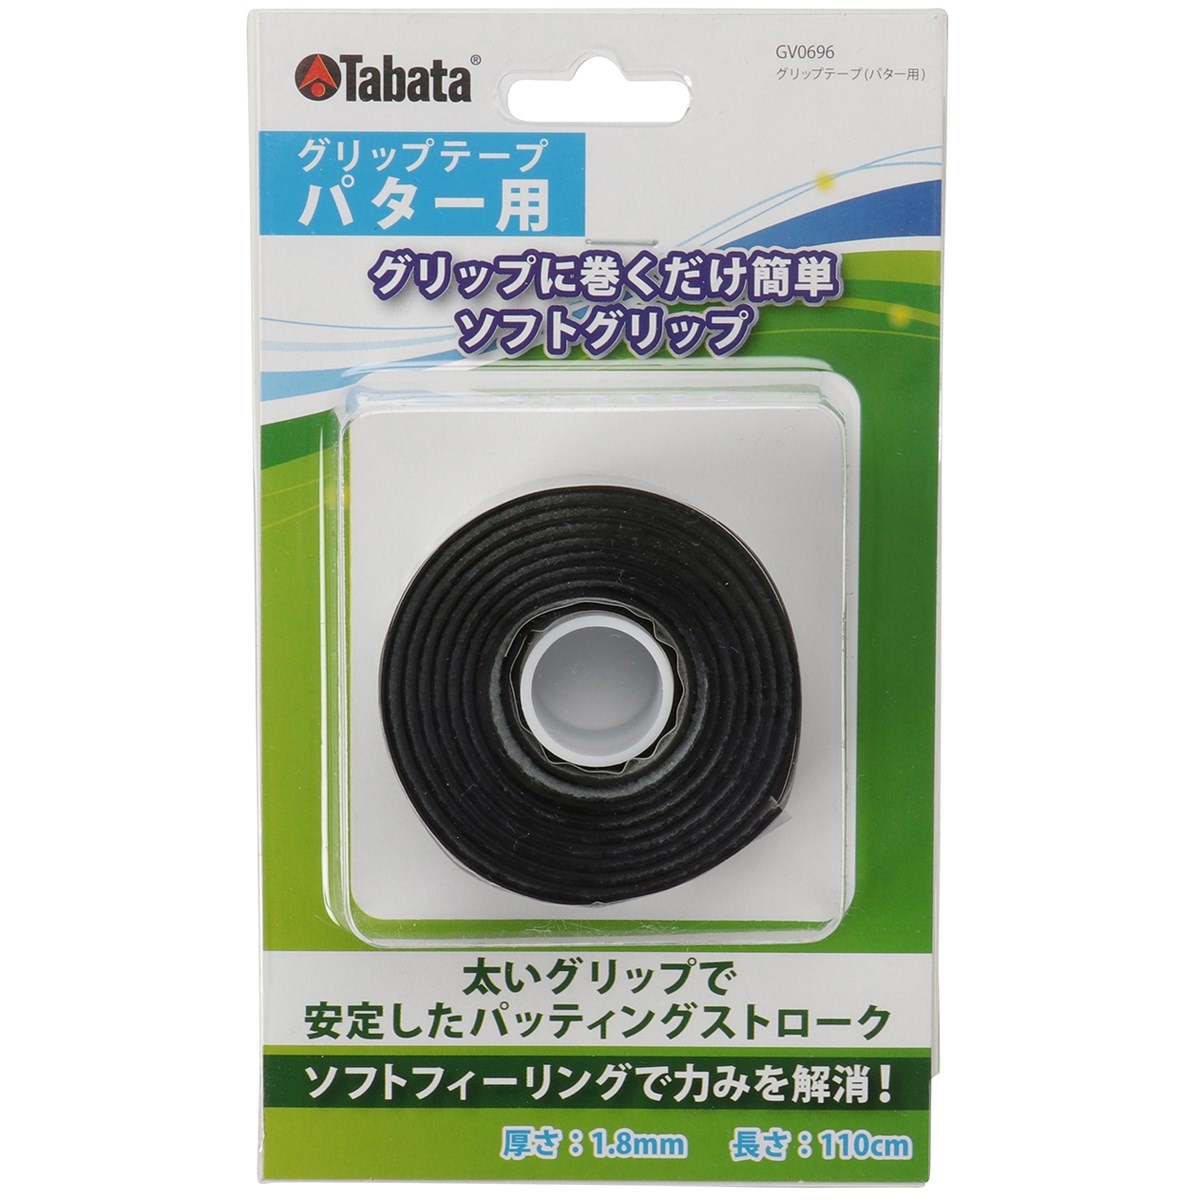 グリップテープ パター用GV-0696(リペアグッズ)|Tabata(タバタ)の通販